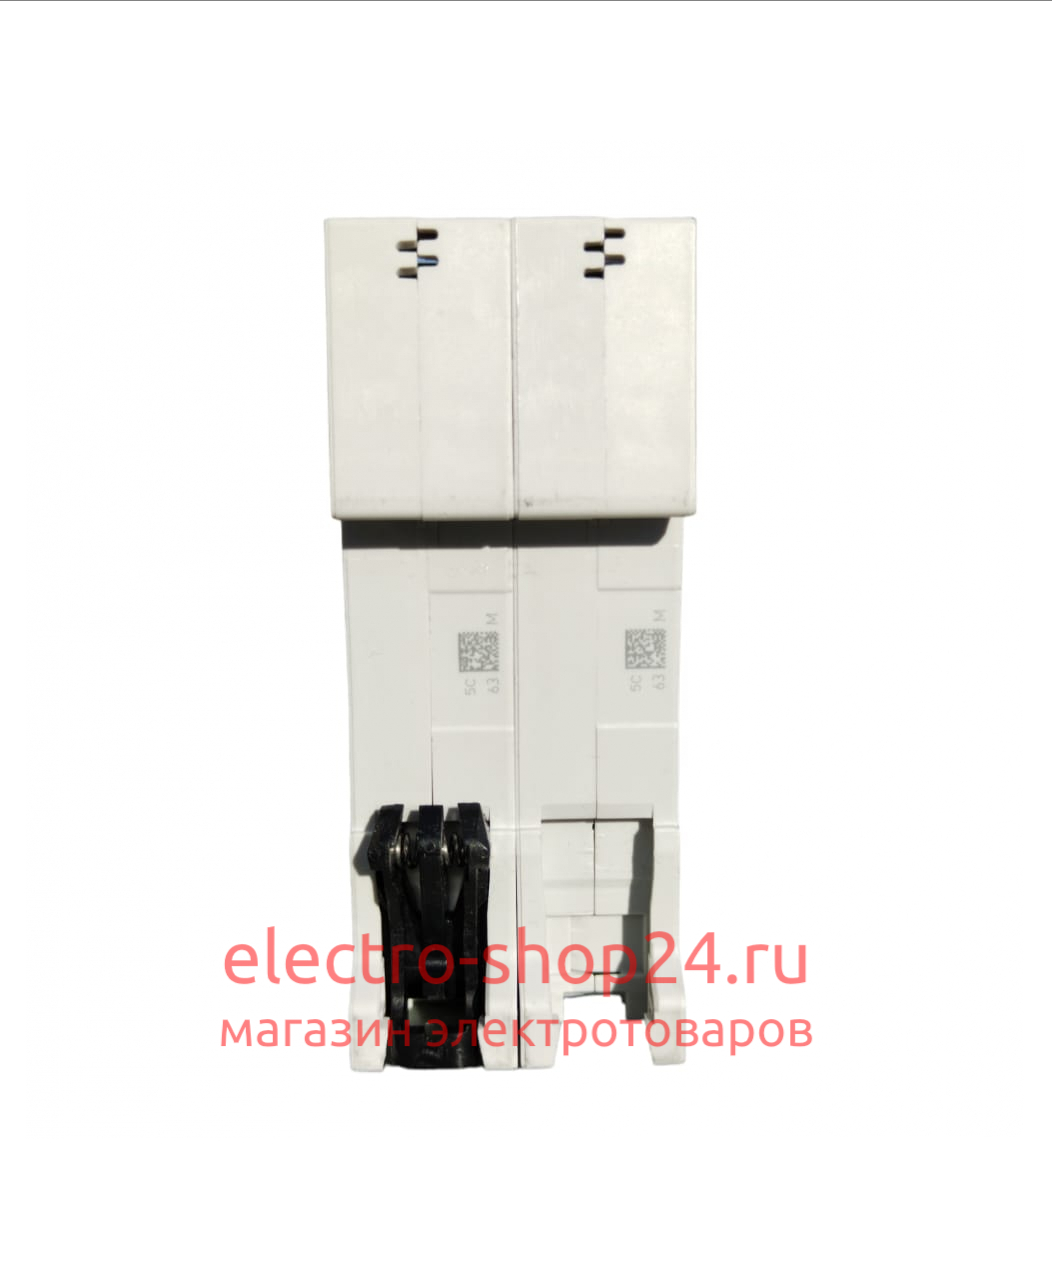 S202 C16 Автоматический выключатель 2-полюсный 16А 6кА (хар-ка C) ABB 2CDS252001R0164 2CDS252001R0164 - магазин электротехники Electroshop